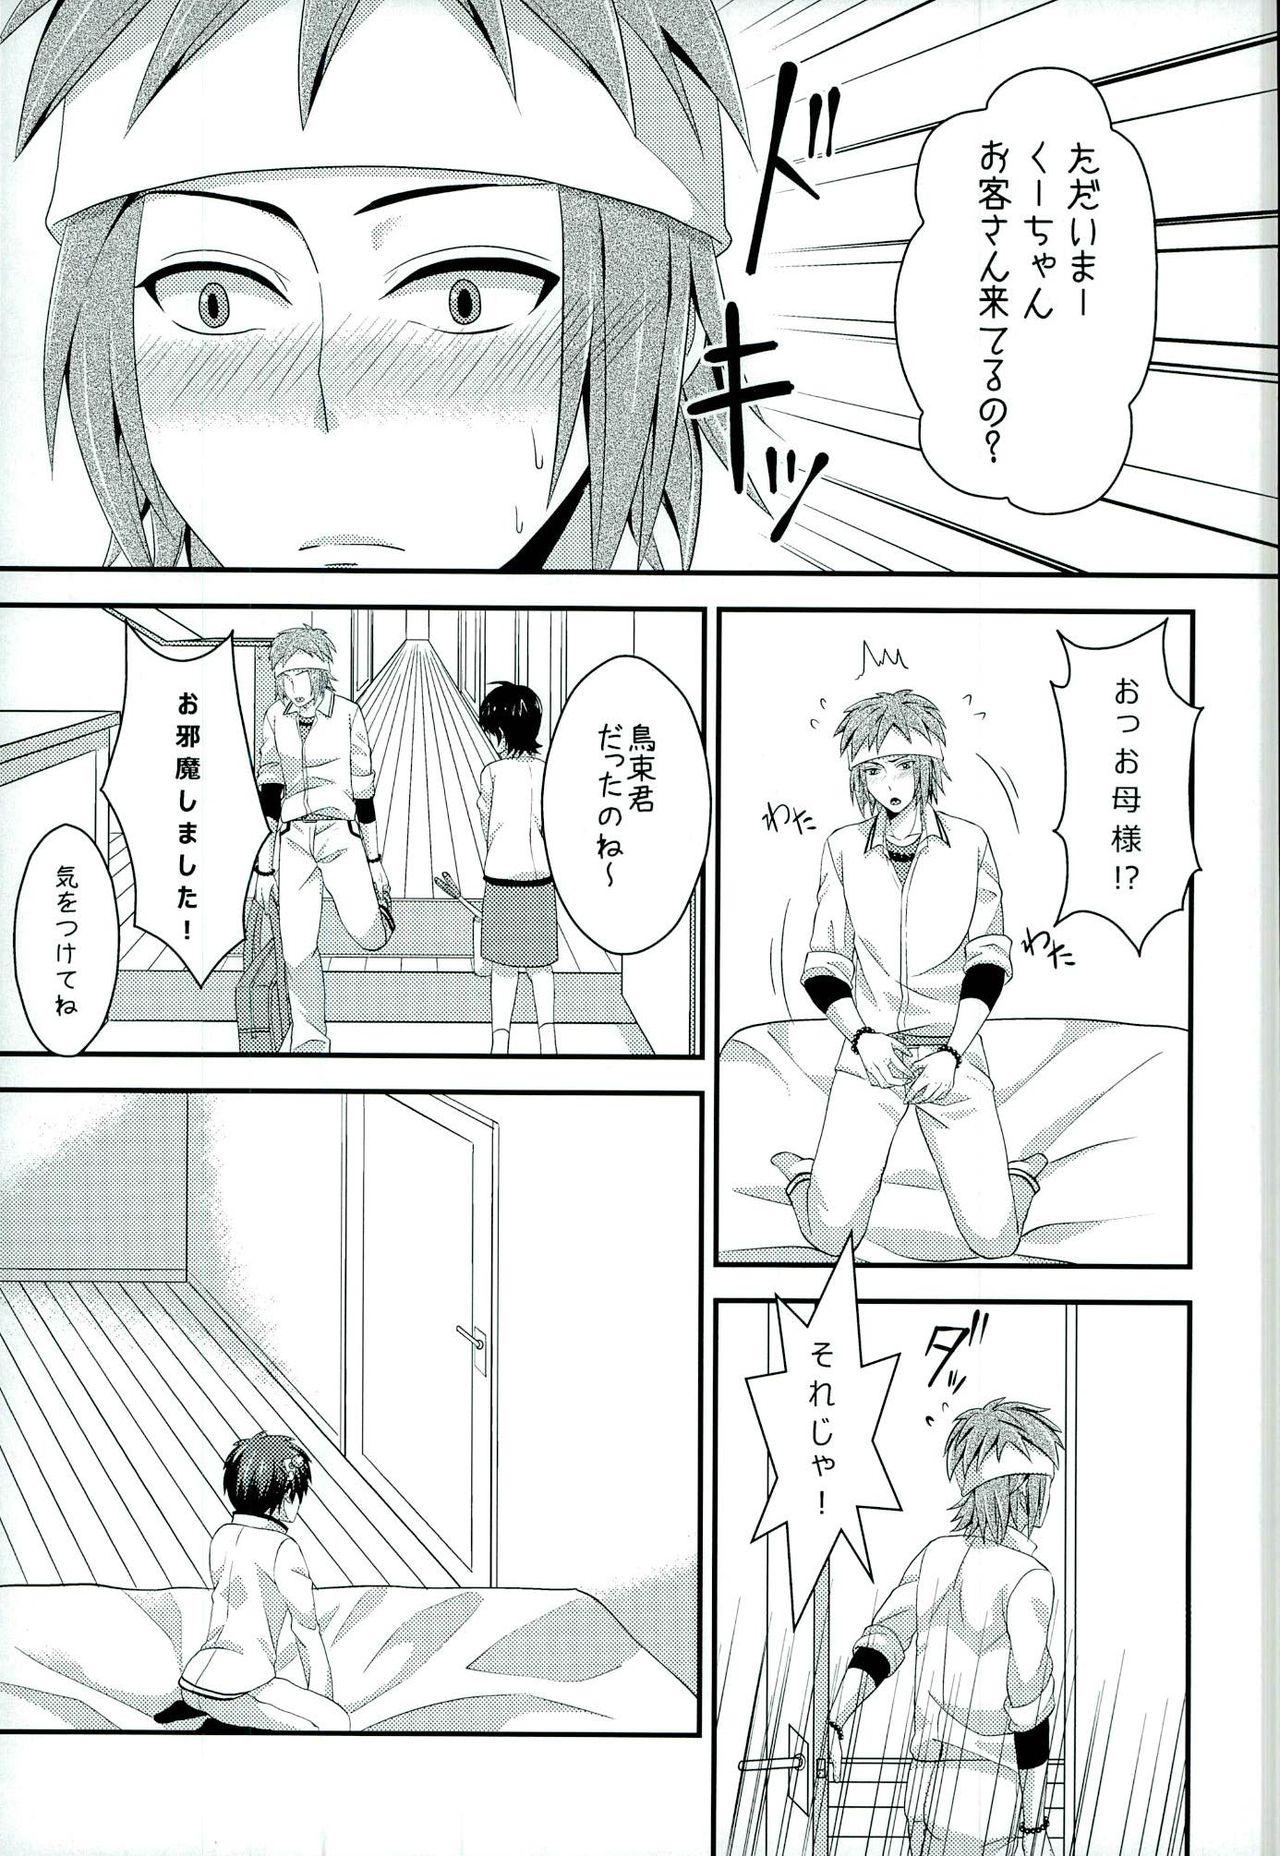 Caught Sona no Koujitsu! - Saiki kusuo no psi nan Facial - Page 12